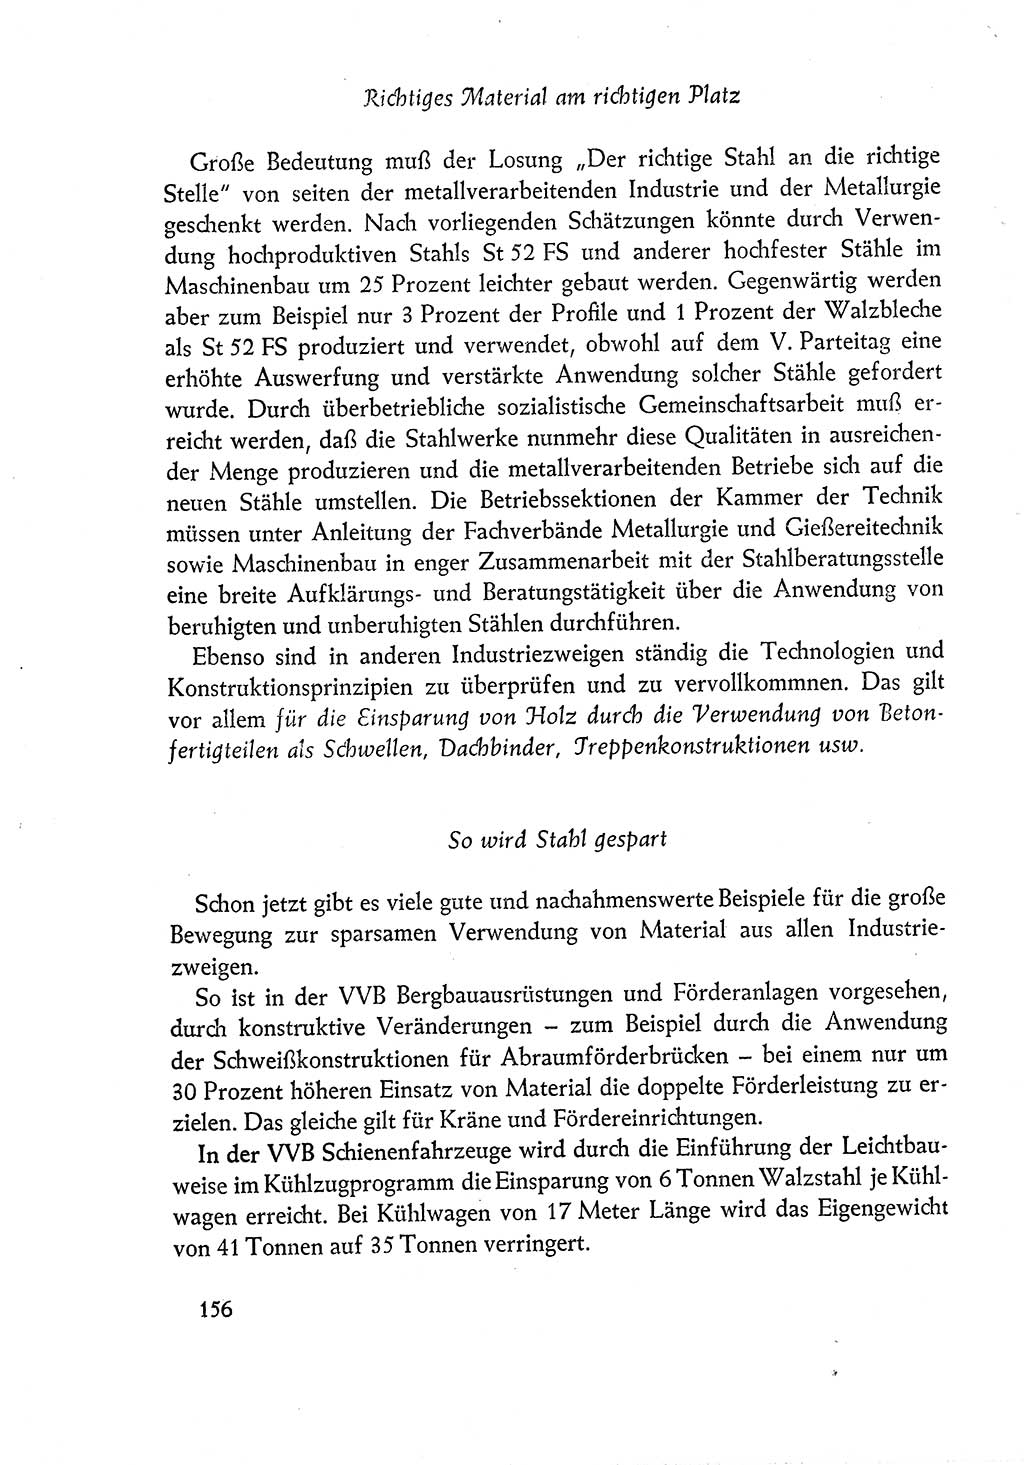 Dokumente der Sozialistischen Einheitspartei Deutschlands (SED) [Deutsche Demokratische Republik (DDR)] 1960-1961, Seite 156 (Dok. SED DDR 1960-1961, S. 156)